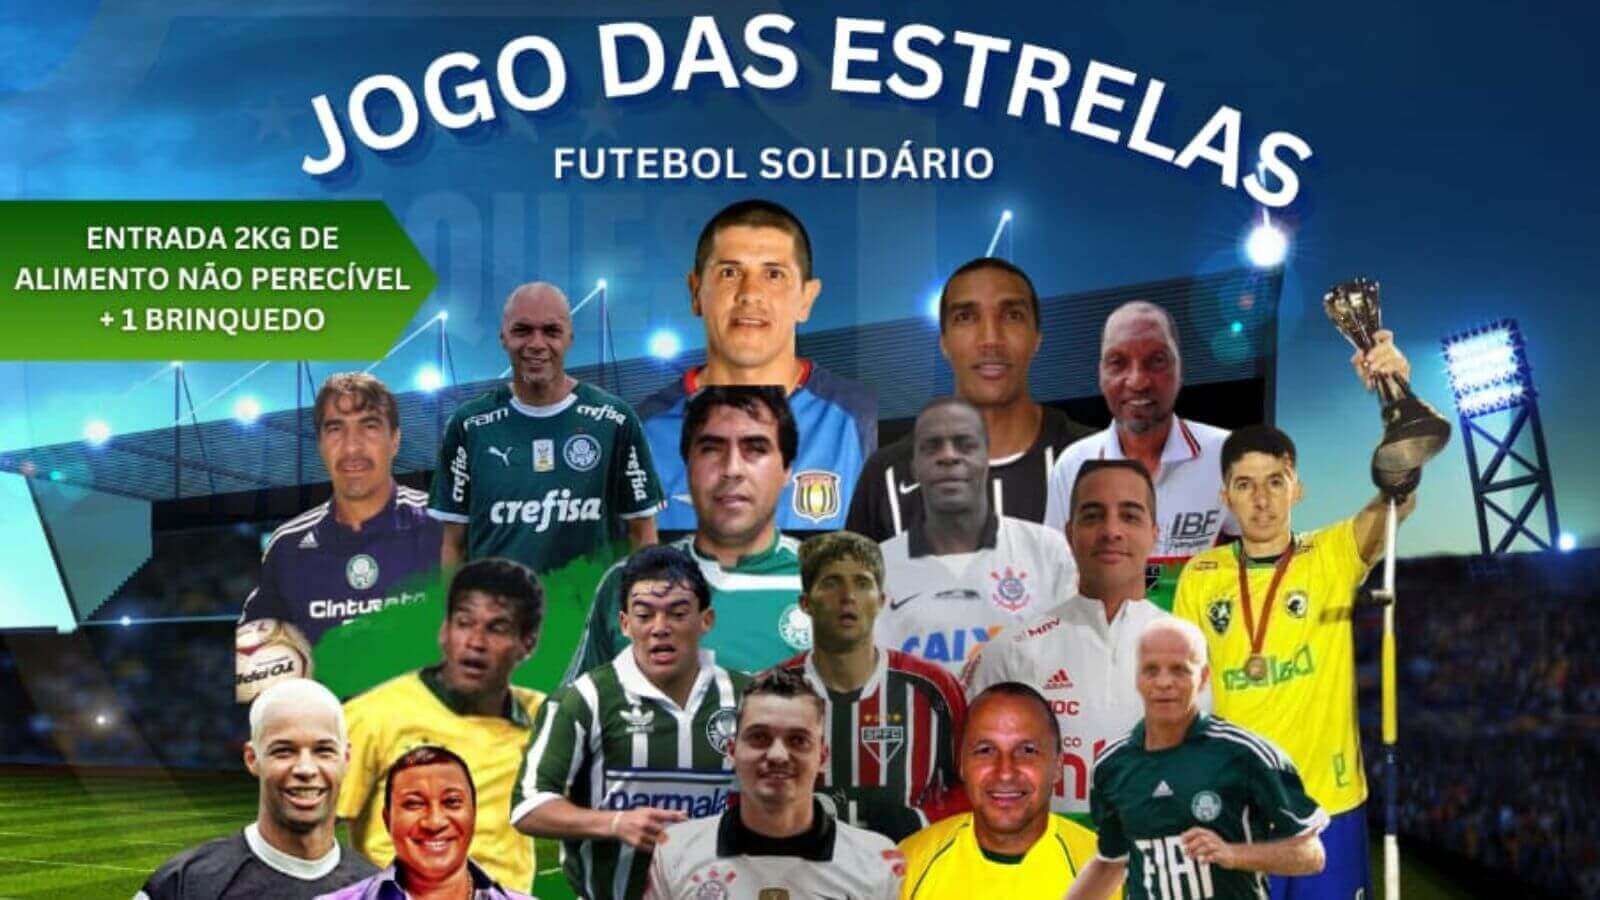 Costa do Sol - Futebol no teu celular Jogabets Nosso parceiro O Brilho  continua em 2021#